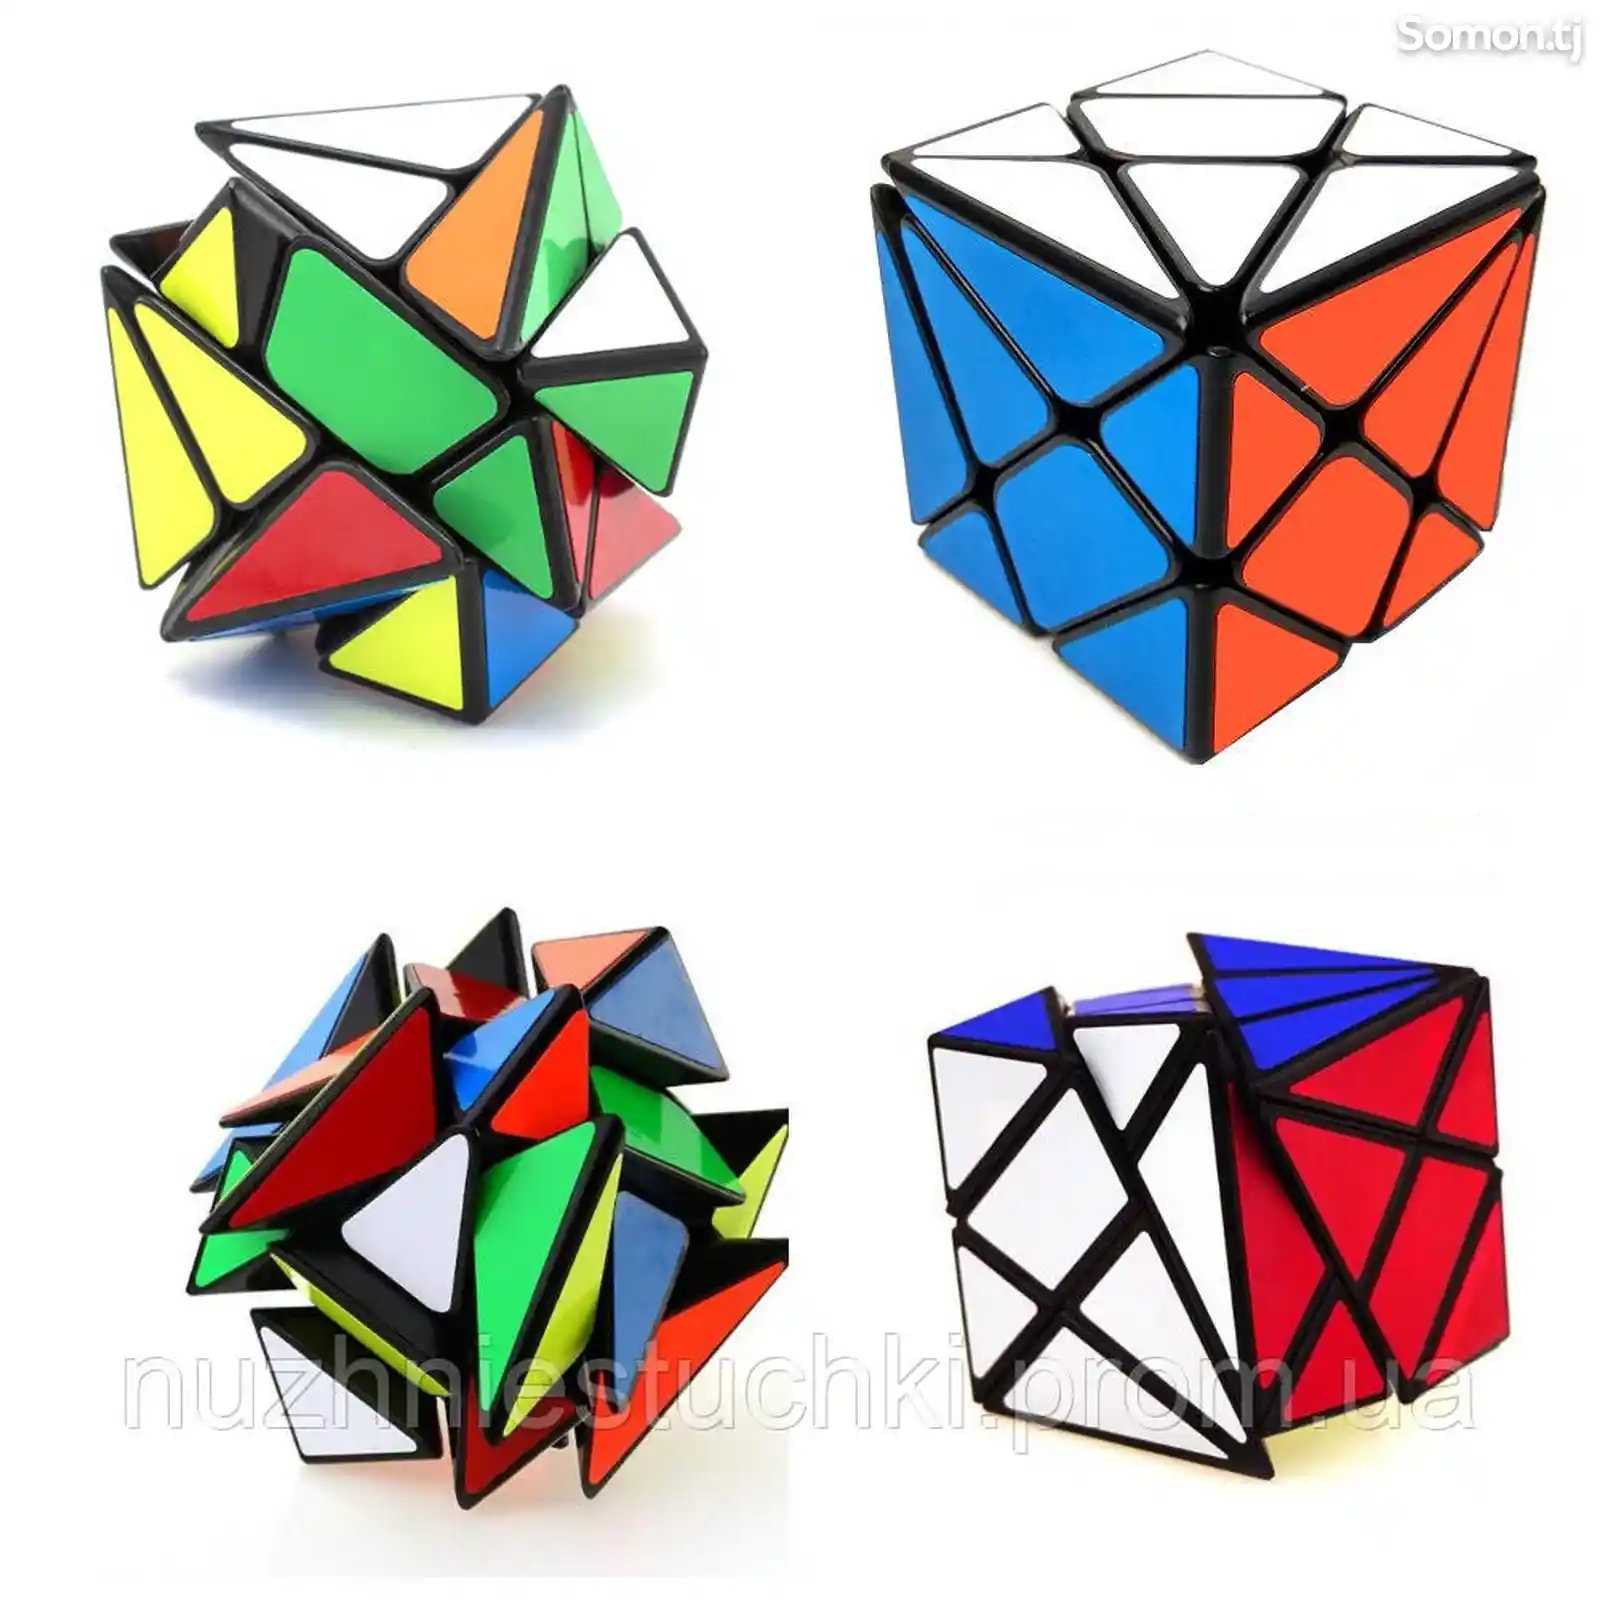 Аксис куб кубика Рубика, Axis cube-1